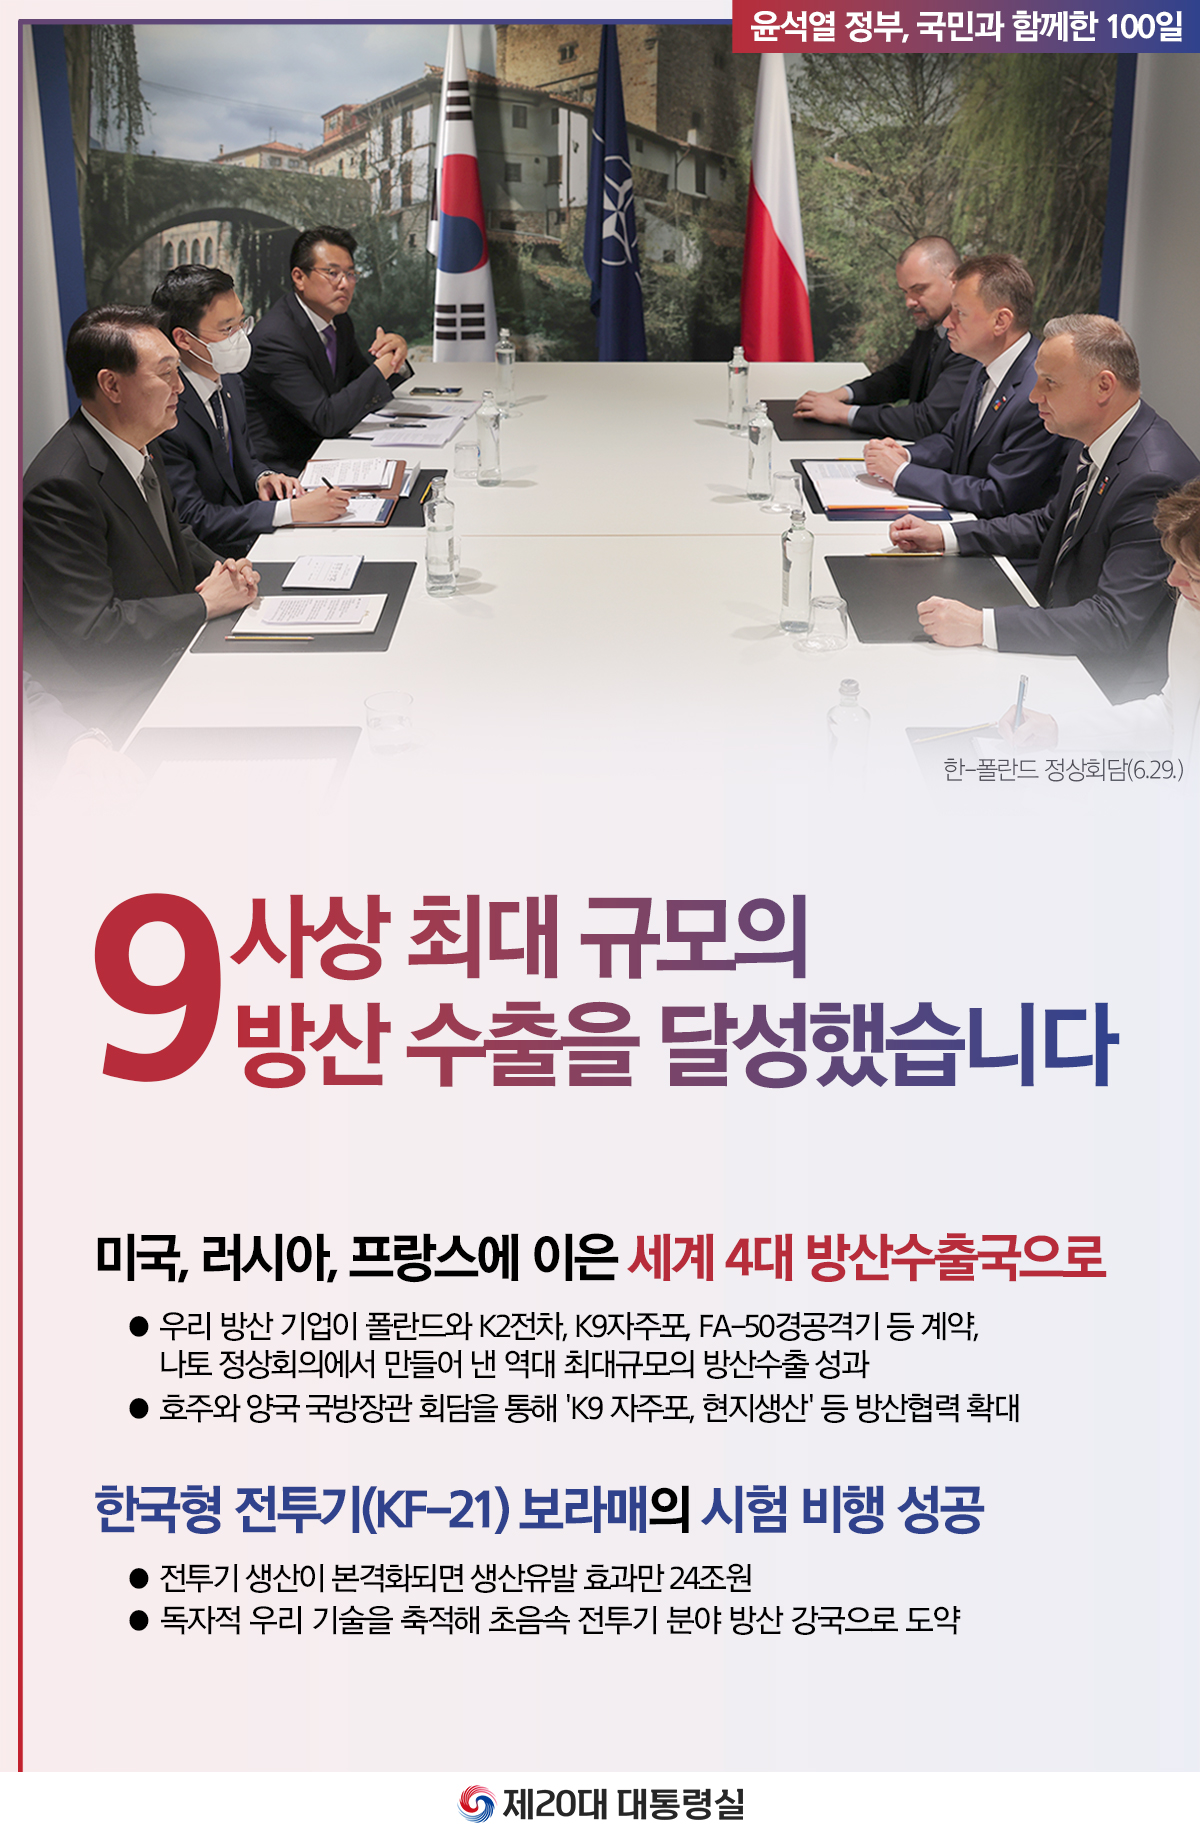 윤석열 정부의 100일, 국민과 함께한 시간들 슬라이드9